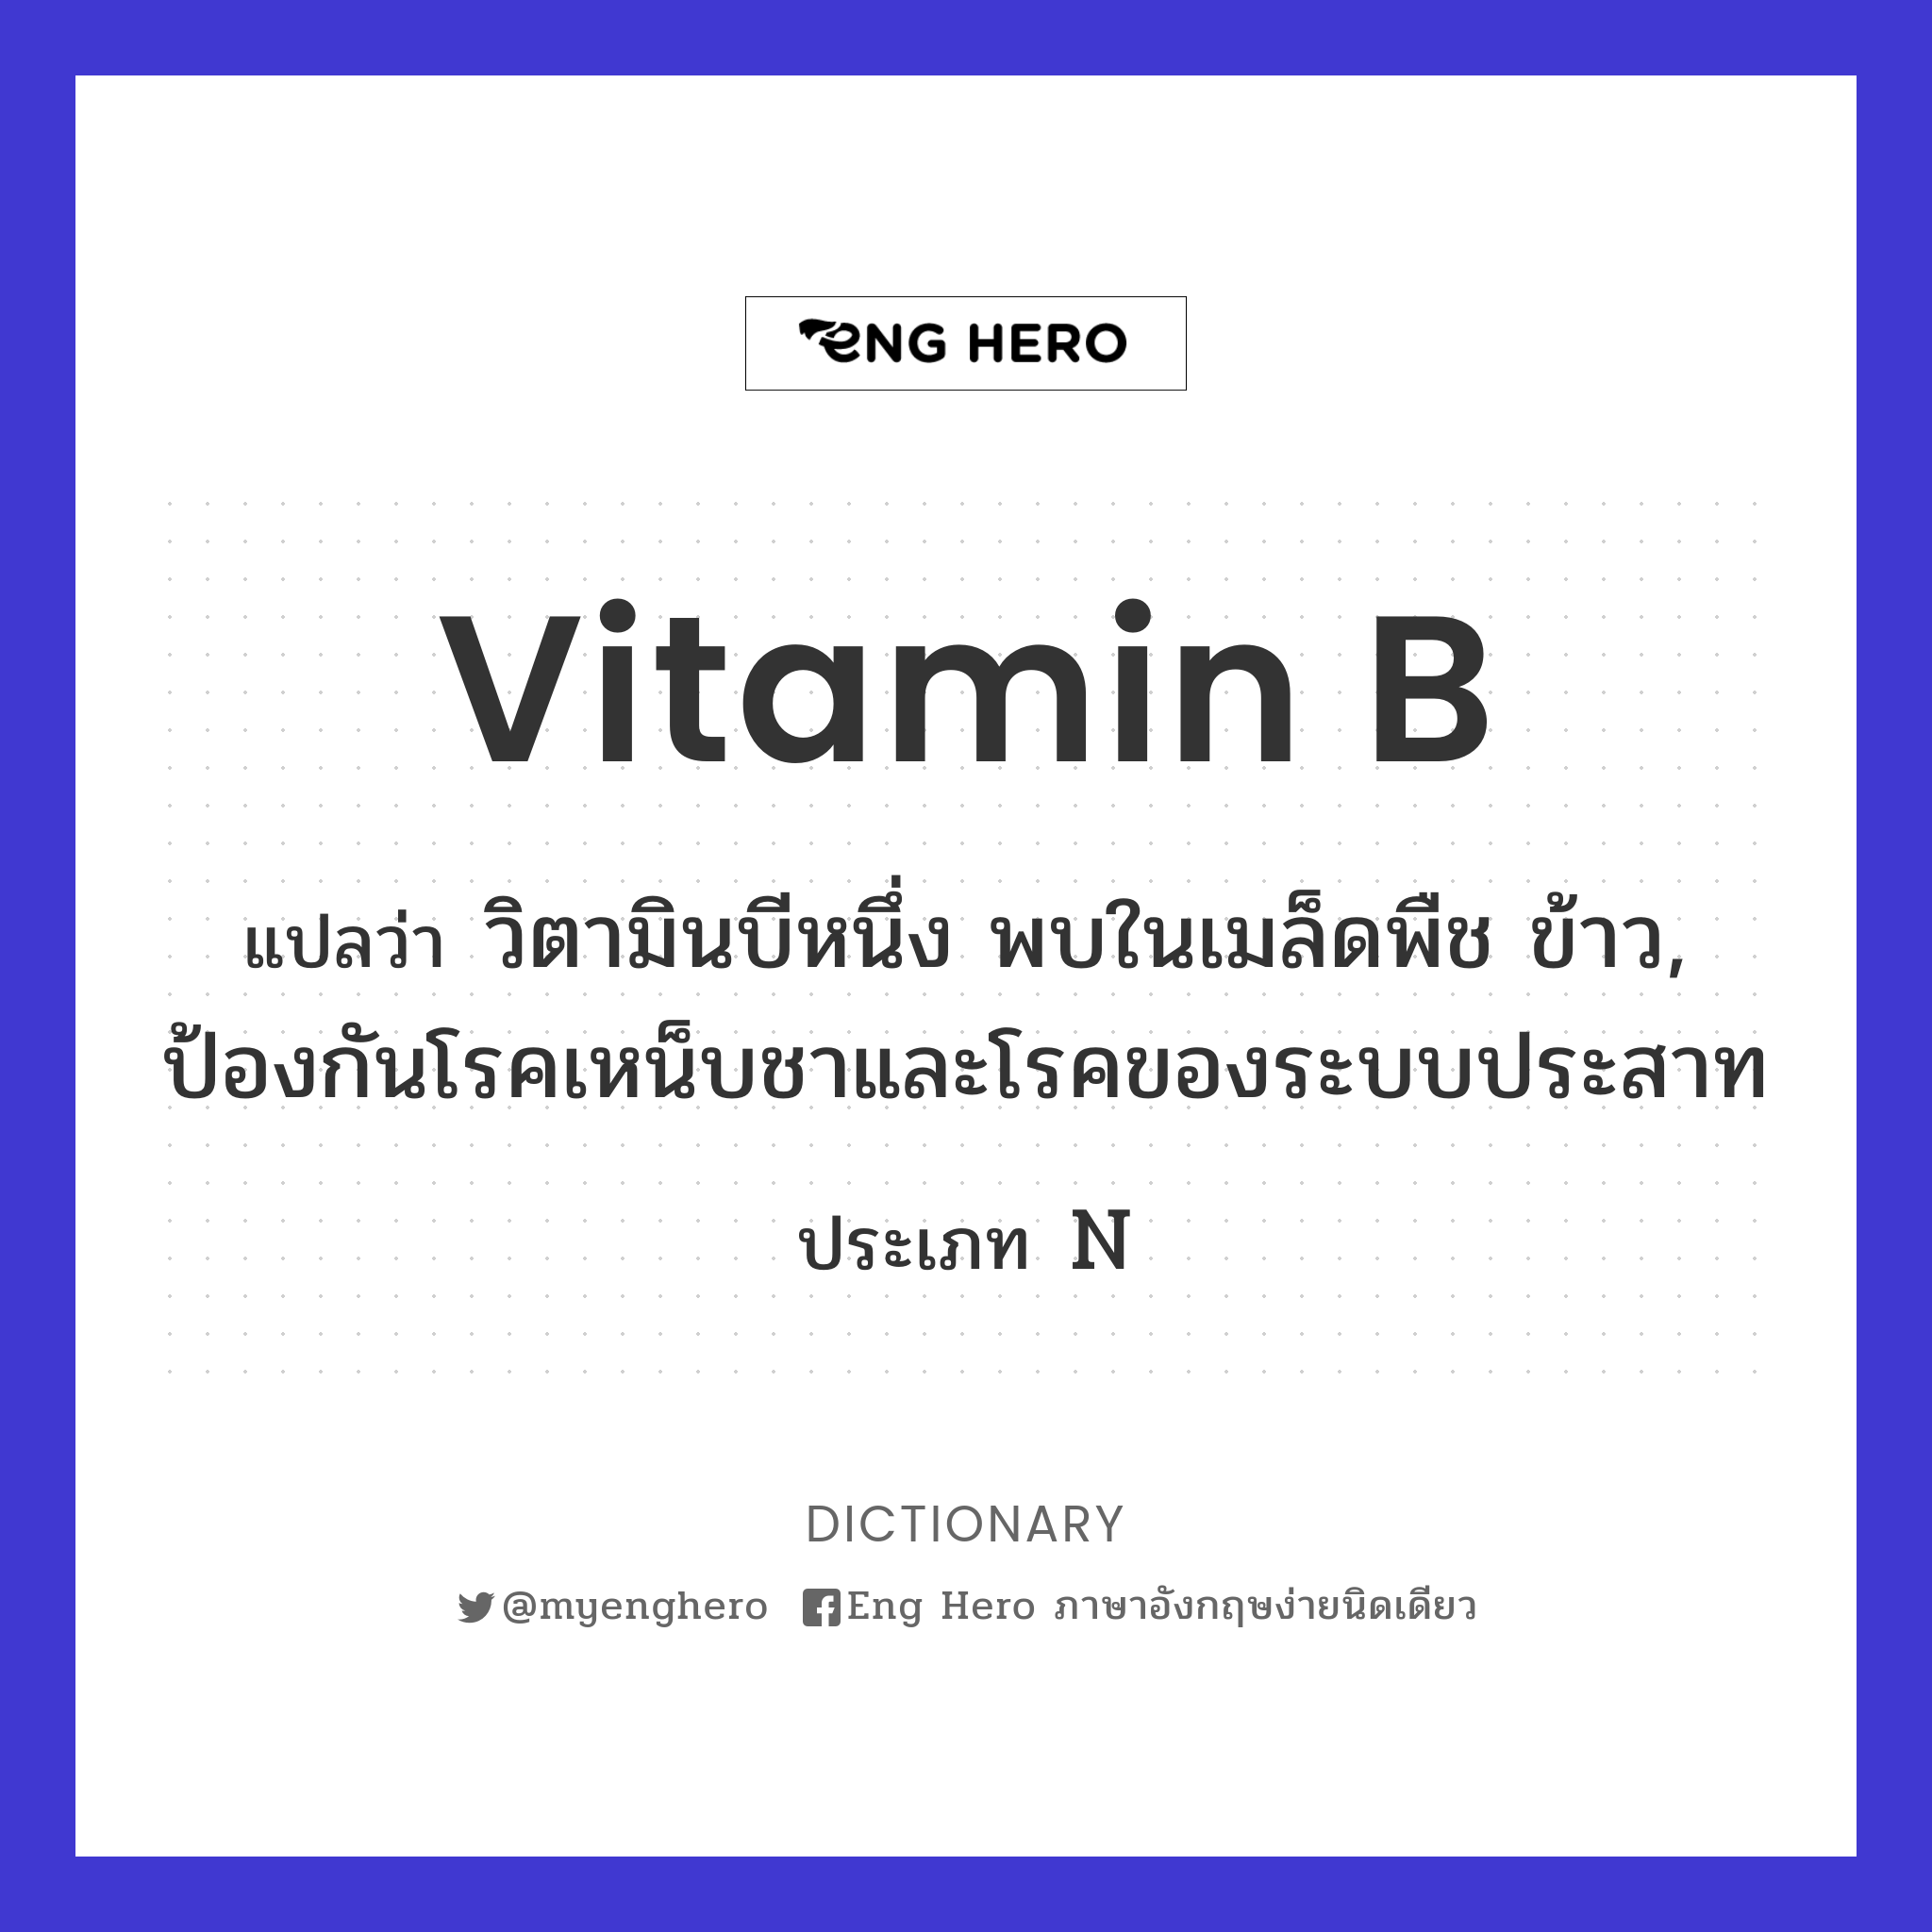 vitamin B